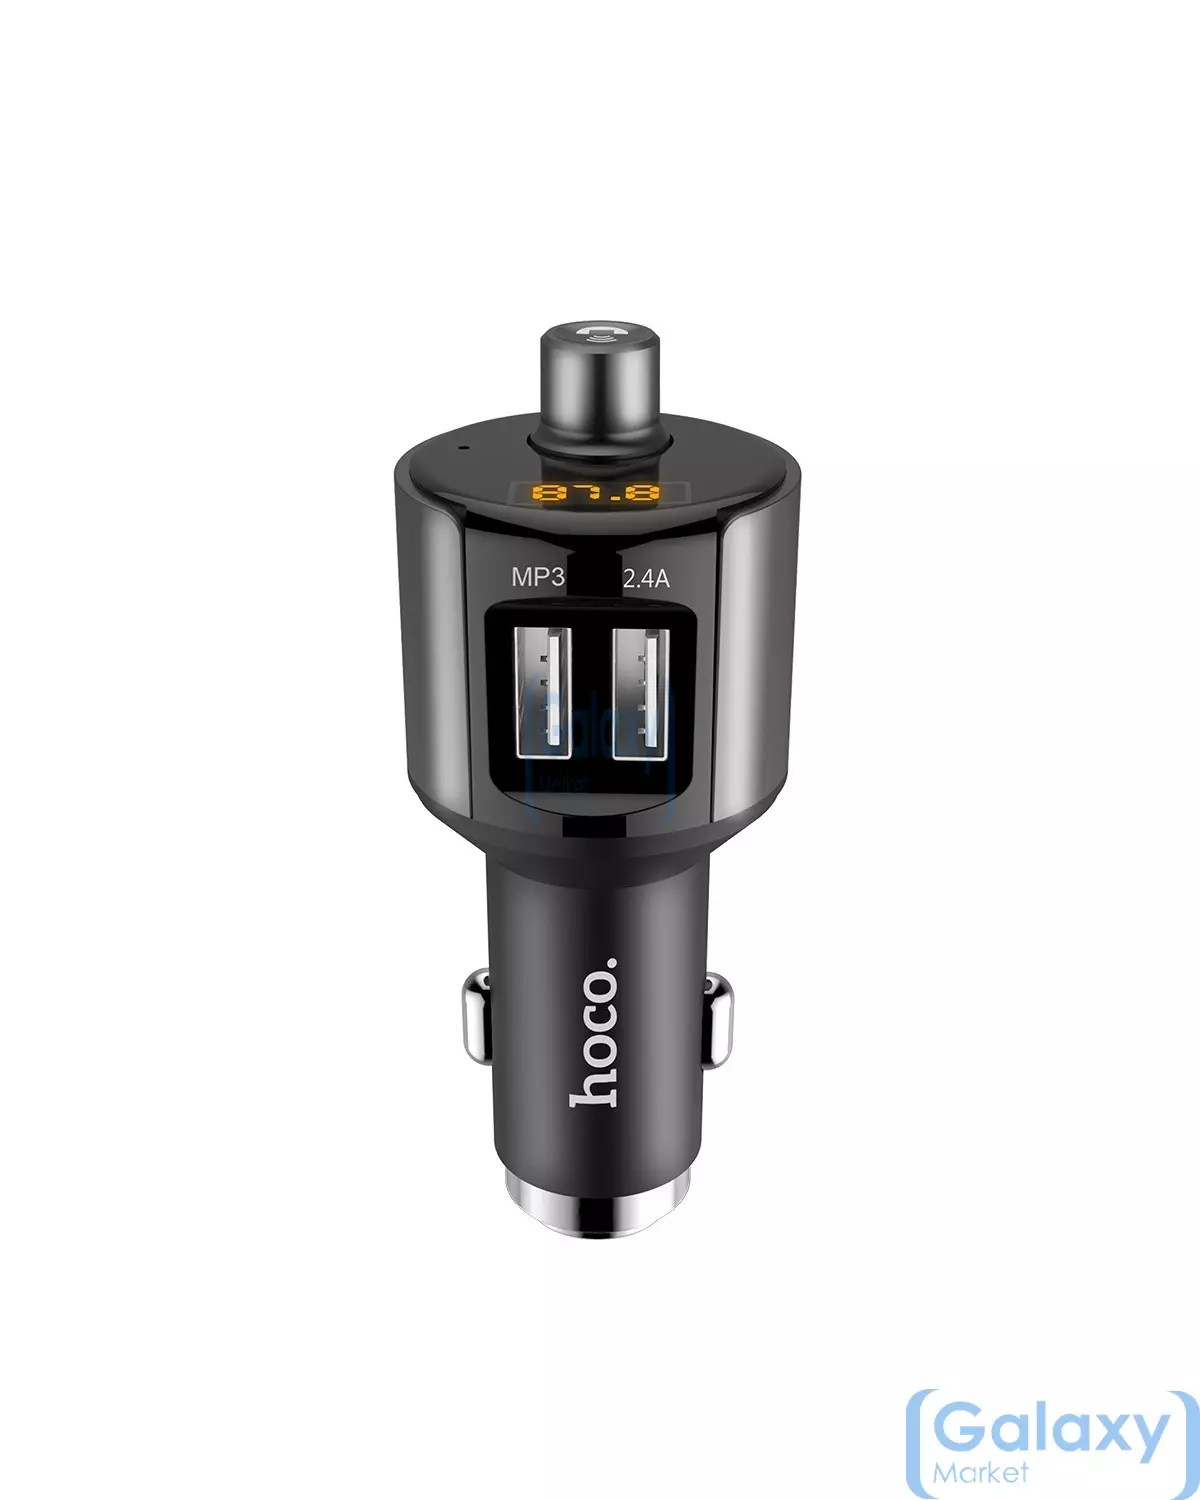 Автомобильная зарядка с дисплеем от прикуривателя для смартфона Hoco E19 Smar Vehicle Mounted Bluetooth FM Lancher Black (Черный)